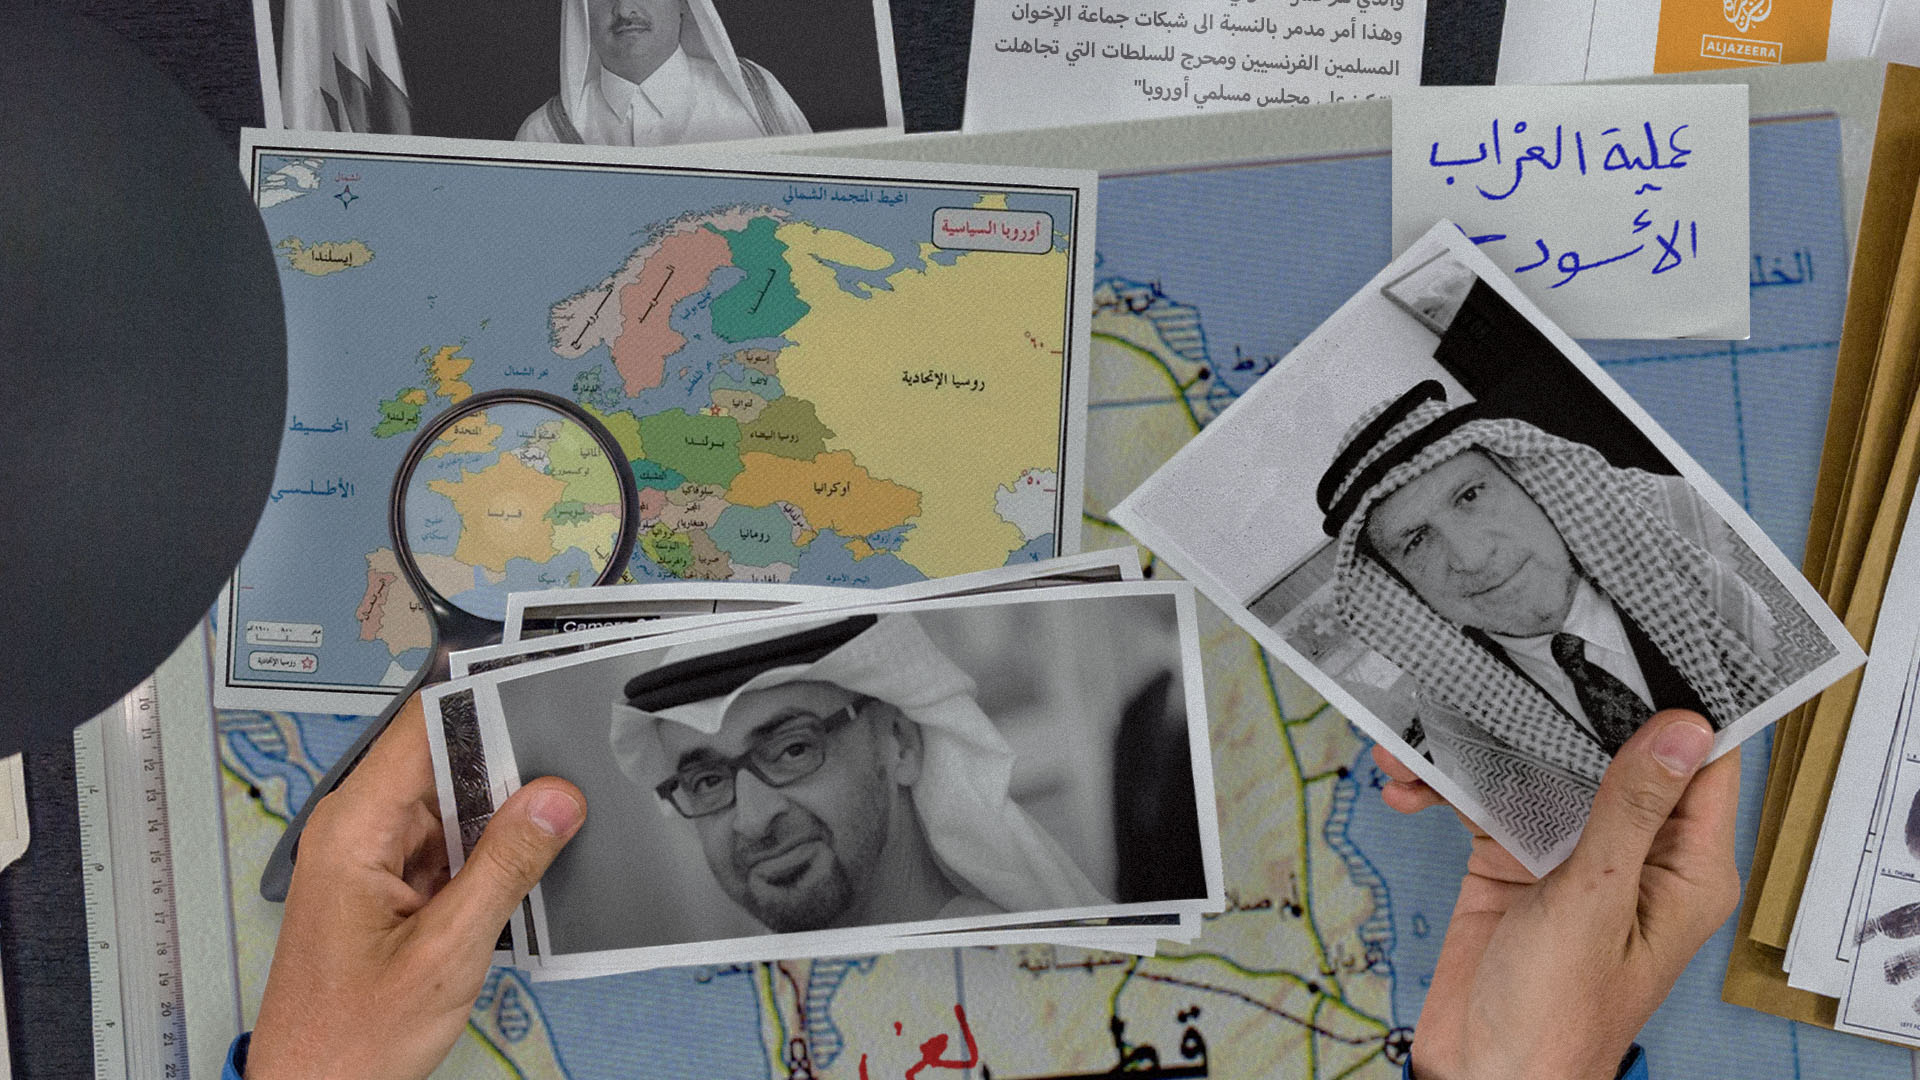 صورة تقرير: الإمارات استخدمت الإعلام والمراكز البحثية والكتّاب المأجورين للترويج لخطورة استخدام قطر للإعلام والمراكز البحثية والكتّاب المأجورين